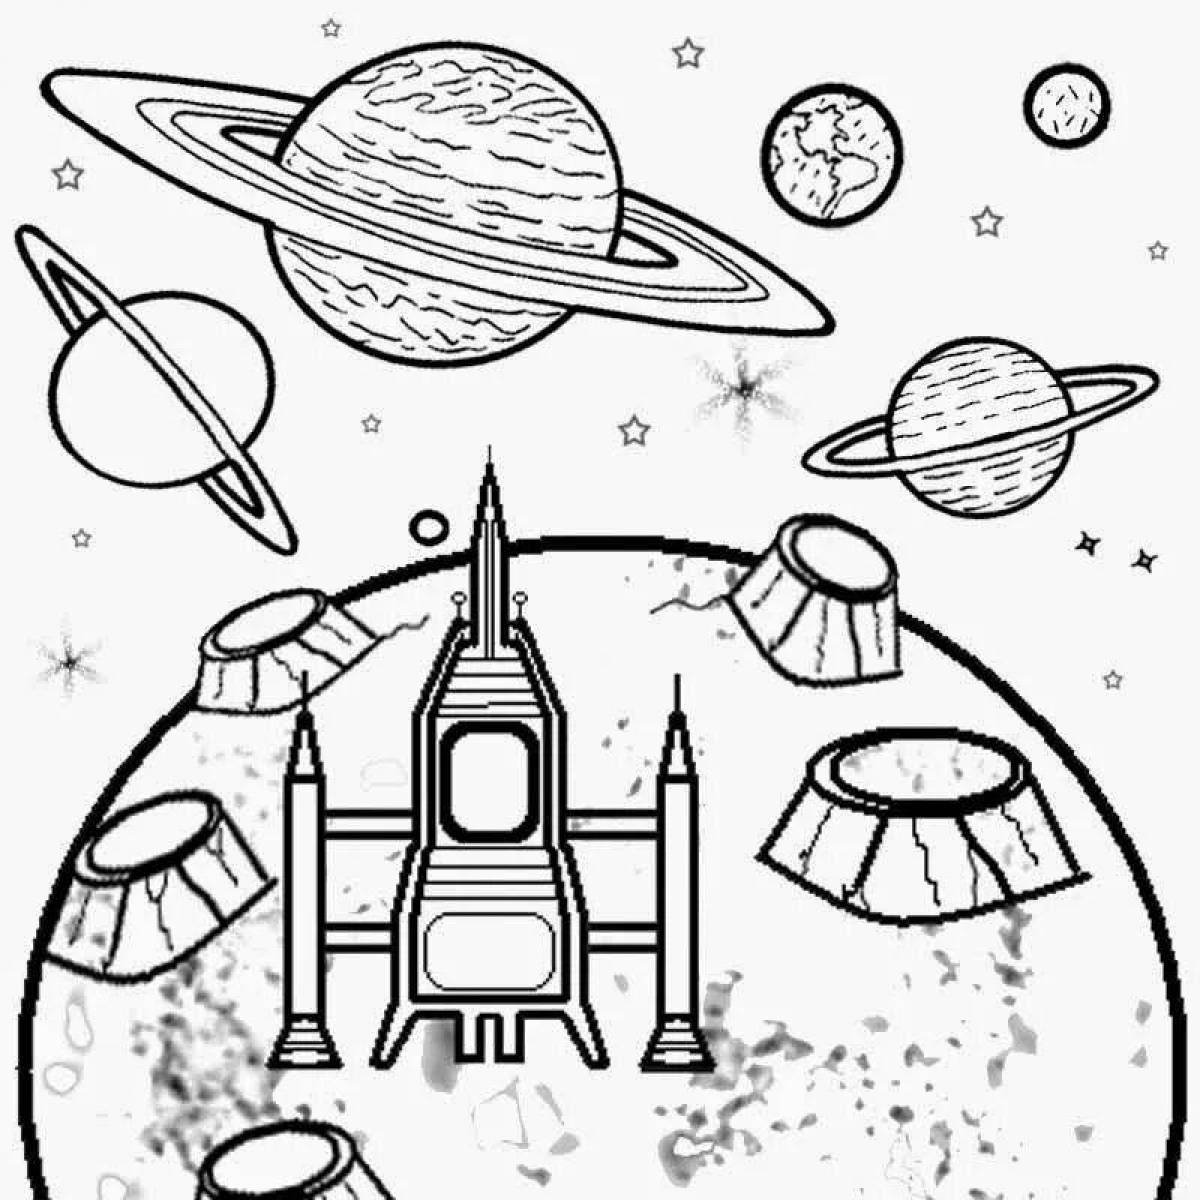 Картинка космос раскраска. Раскраска. В космосе. Раскраска космос карандашом. Раскраска на тему космос для детей. Раскраска космос и планеты для школьников.